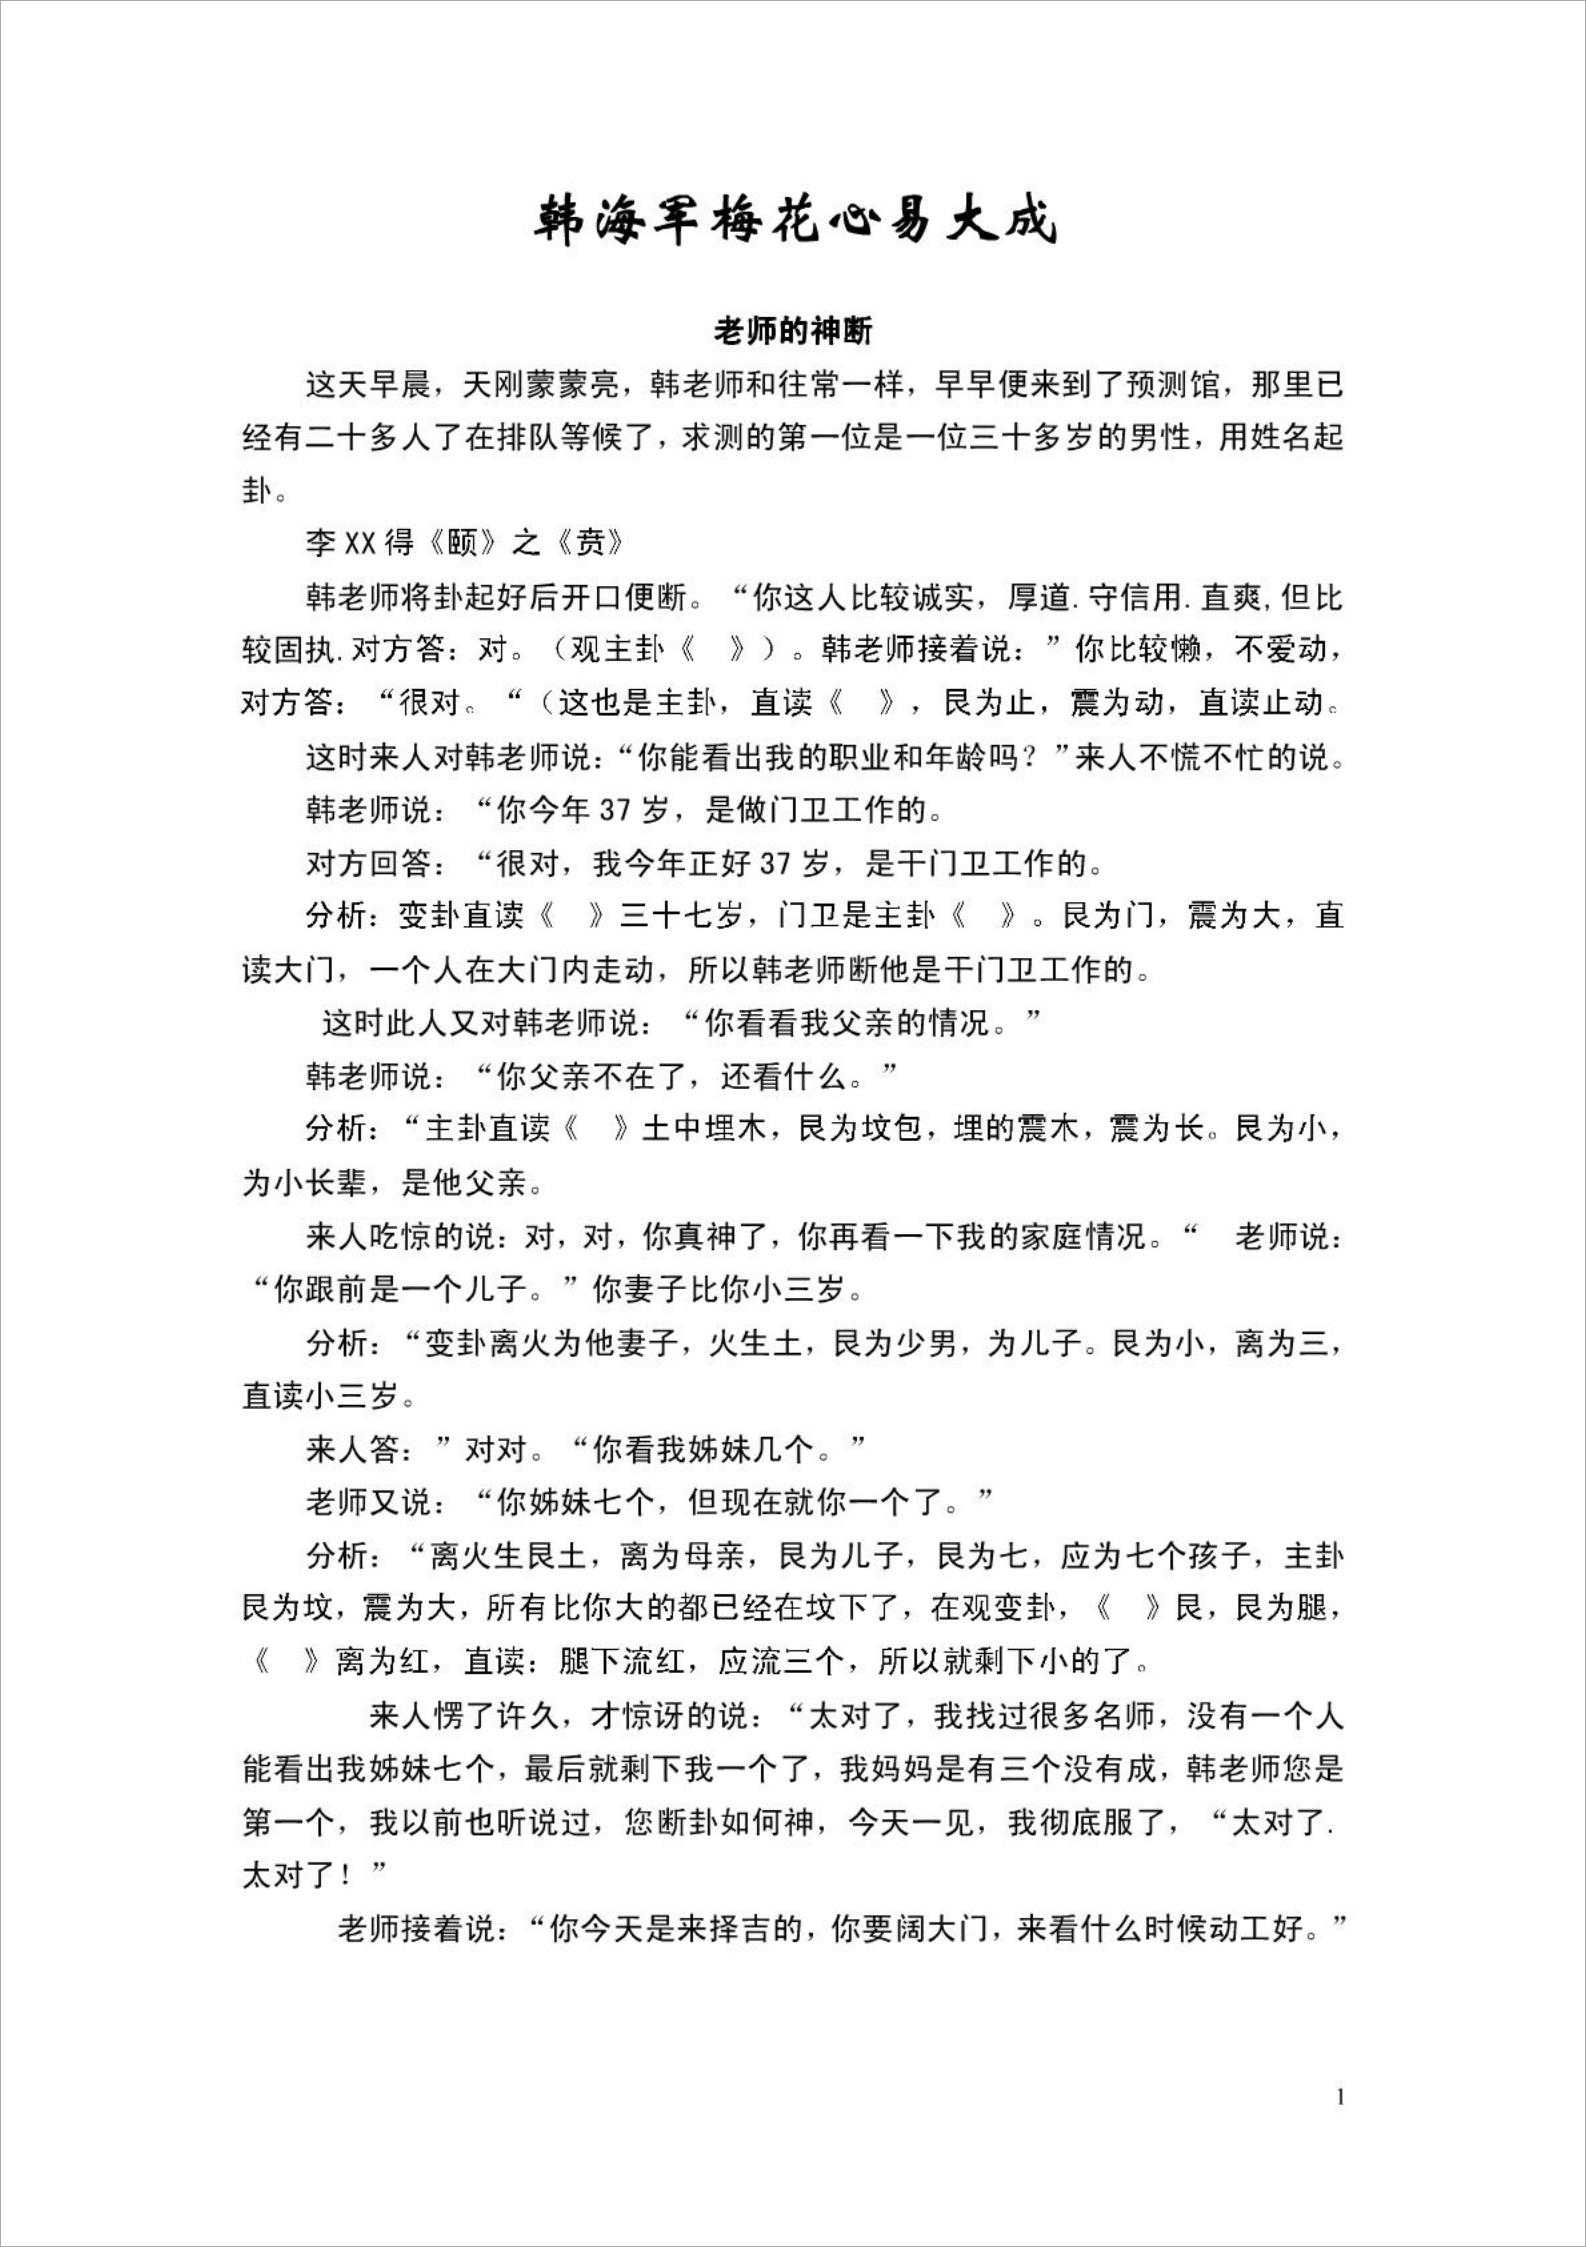 Han Navy Plum Blossom Heart Yi Dacheng.pdf